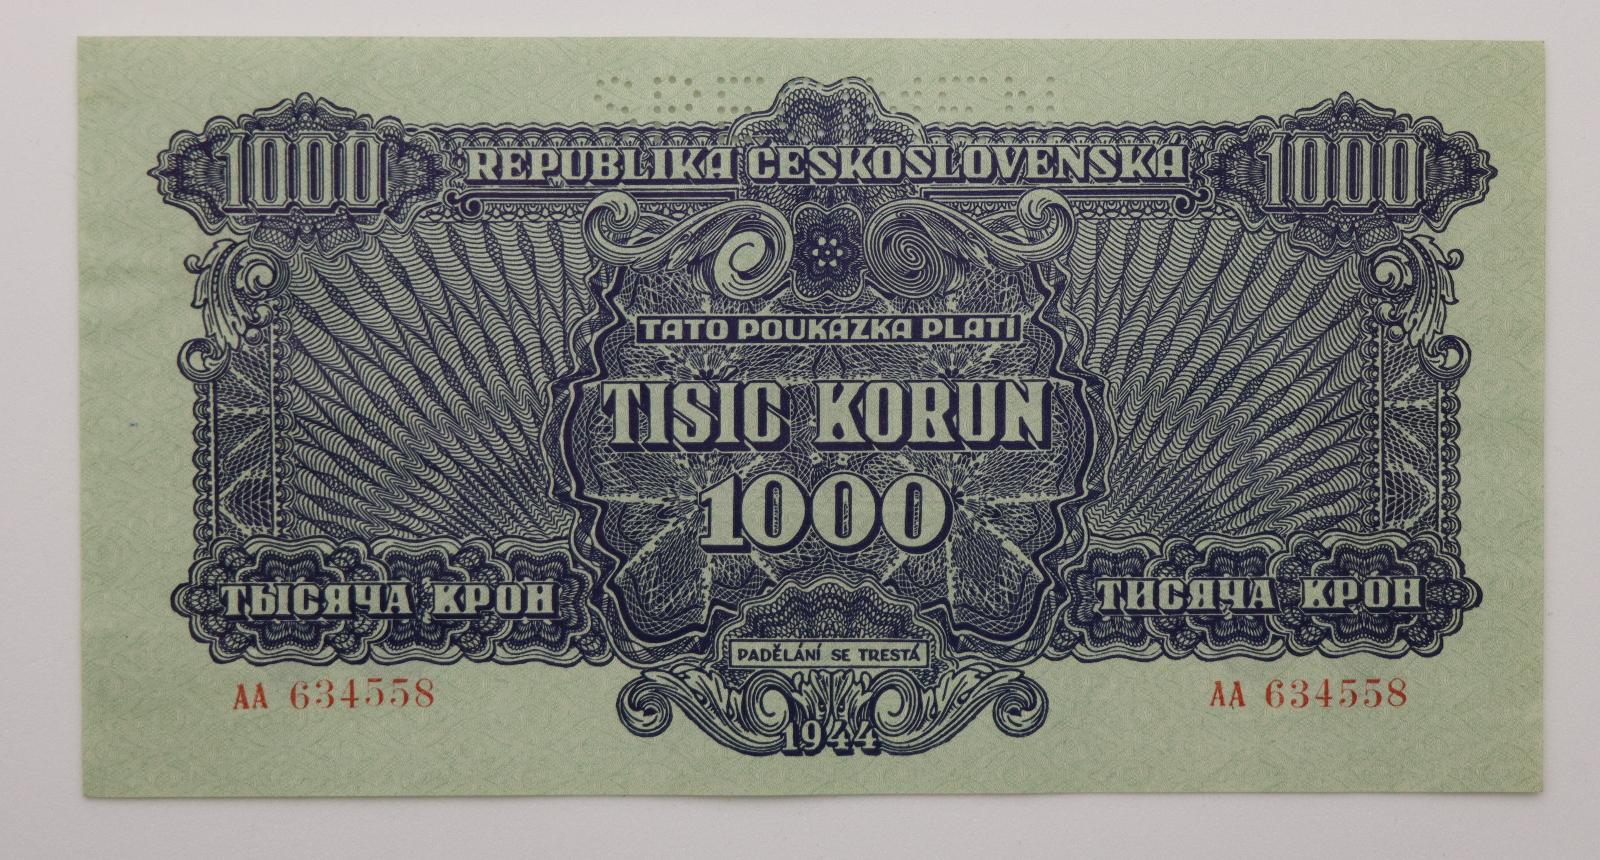 1000 K poukaz 1944 - AA - perforovaná - Bankovky